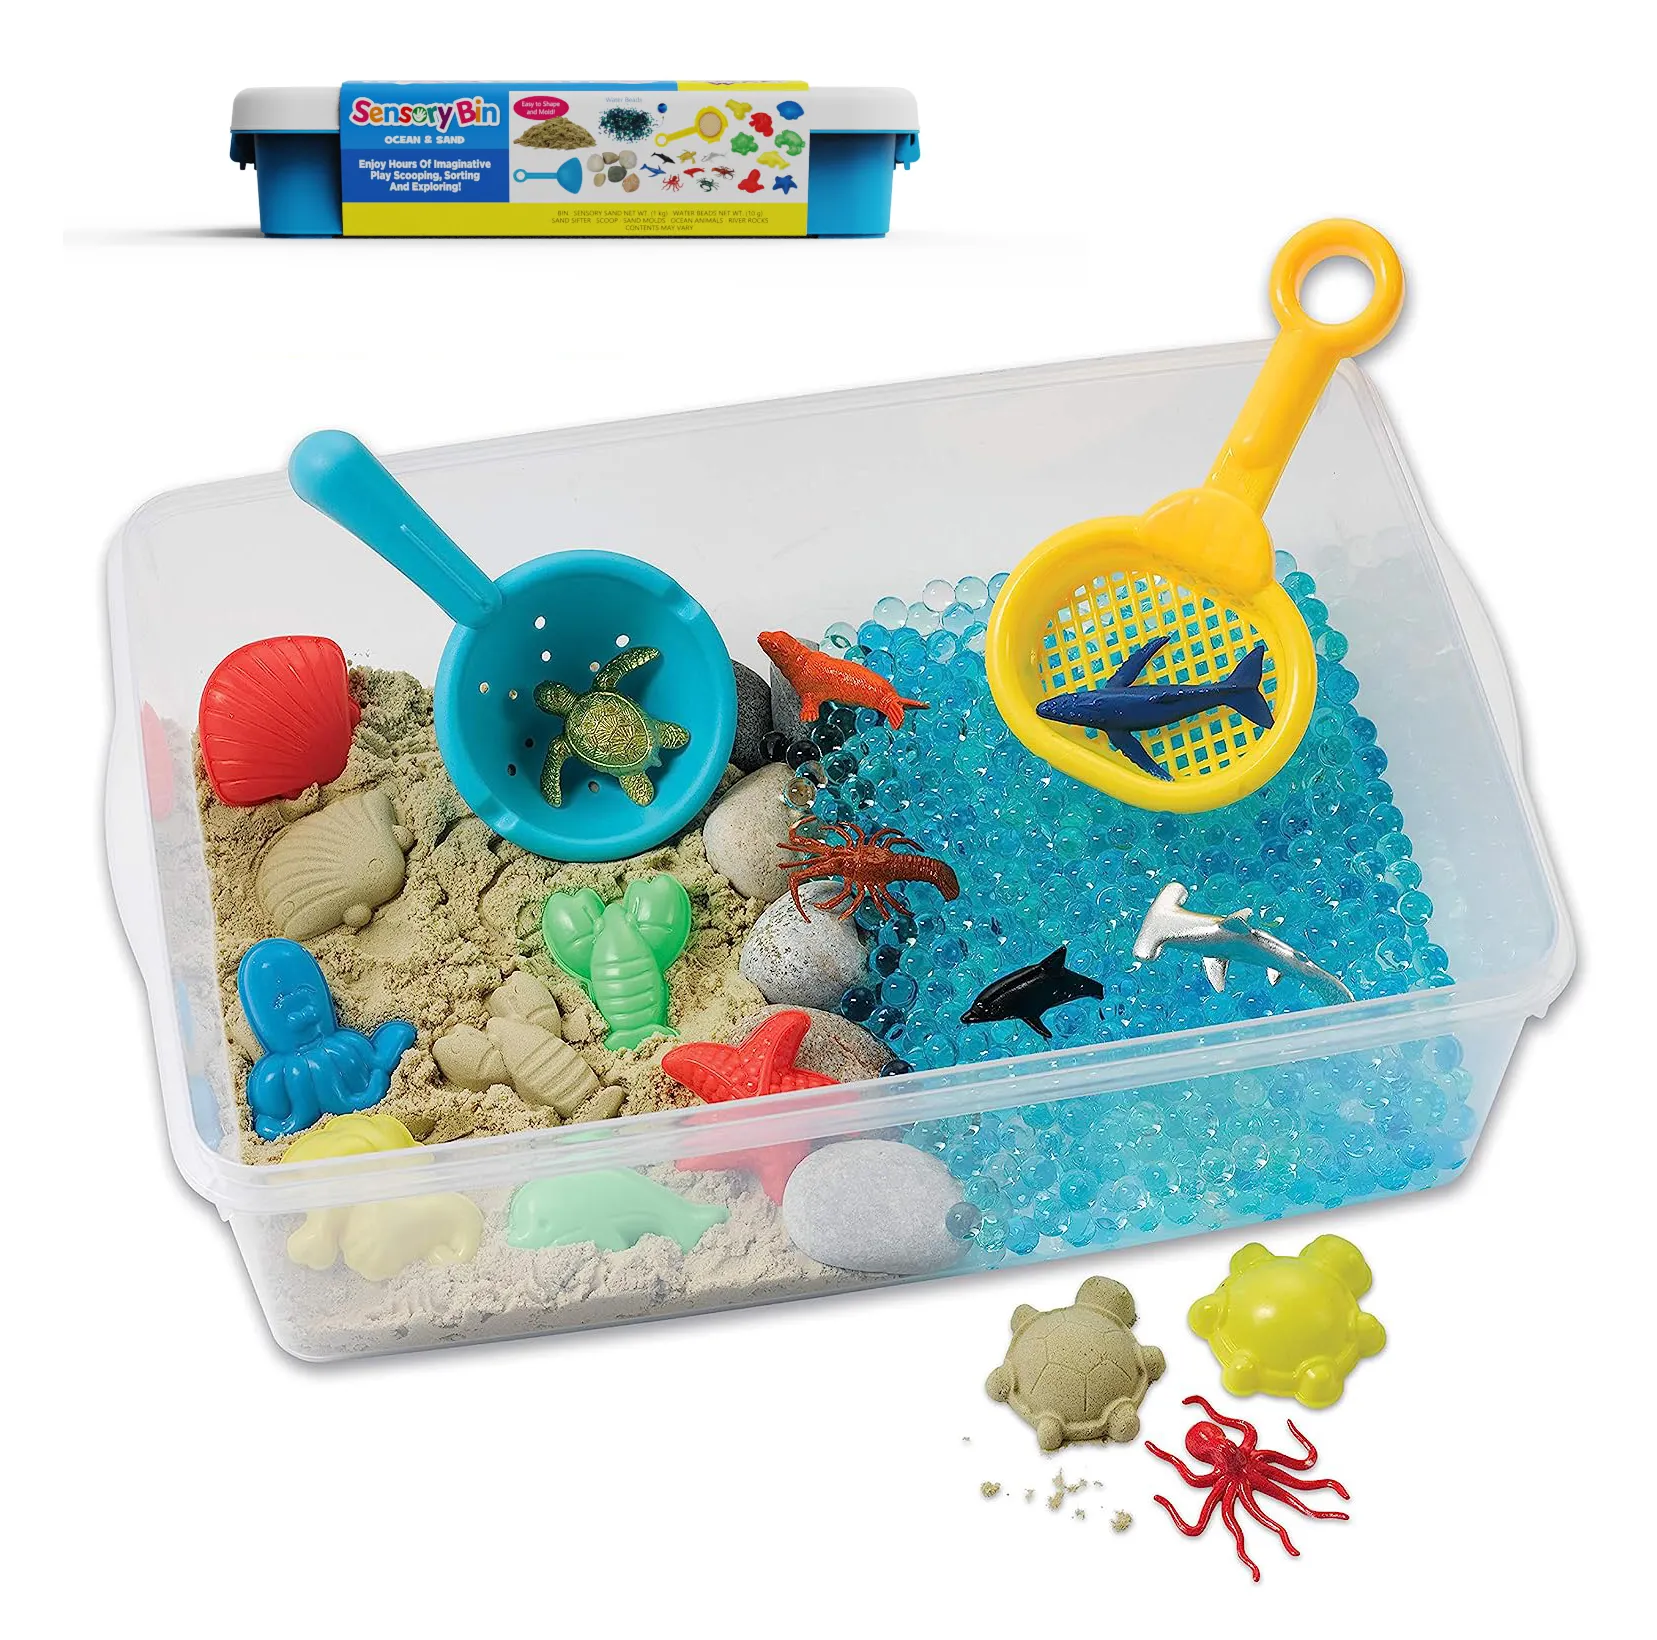 Ensemble de jouets créatifs en coton magique pour enfants, nouveau jouet spatial, moule de sable, argile magique, couleur, sous-marin, Animal, boîte sensorielle, ensemble de jouets